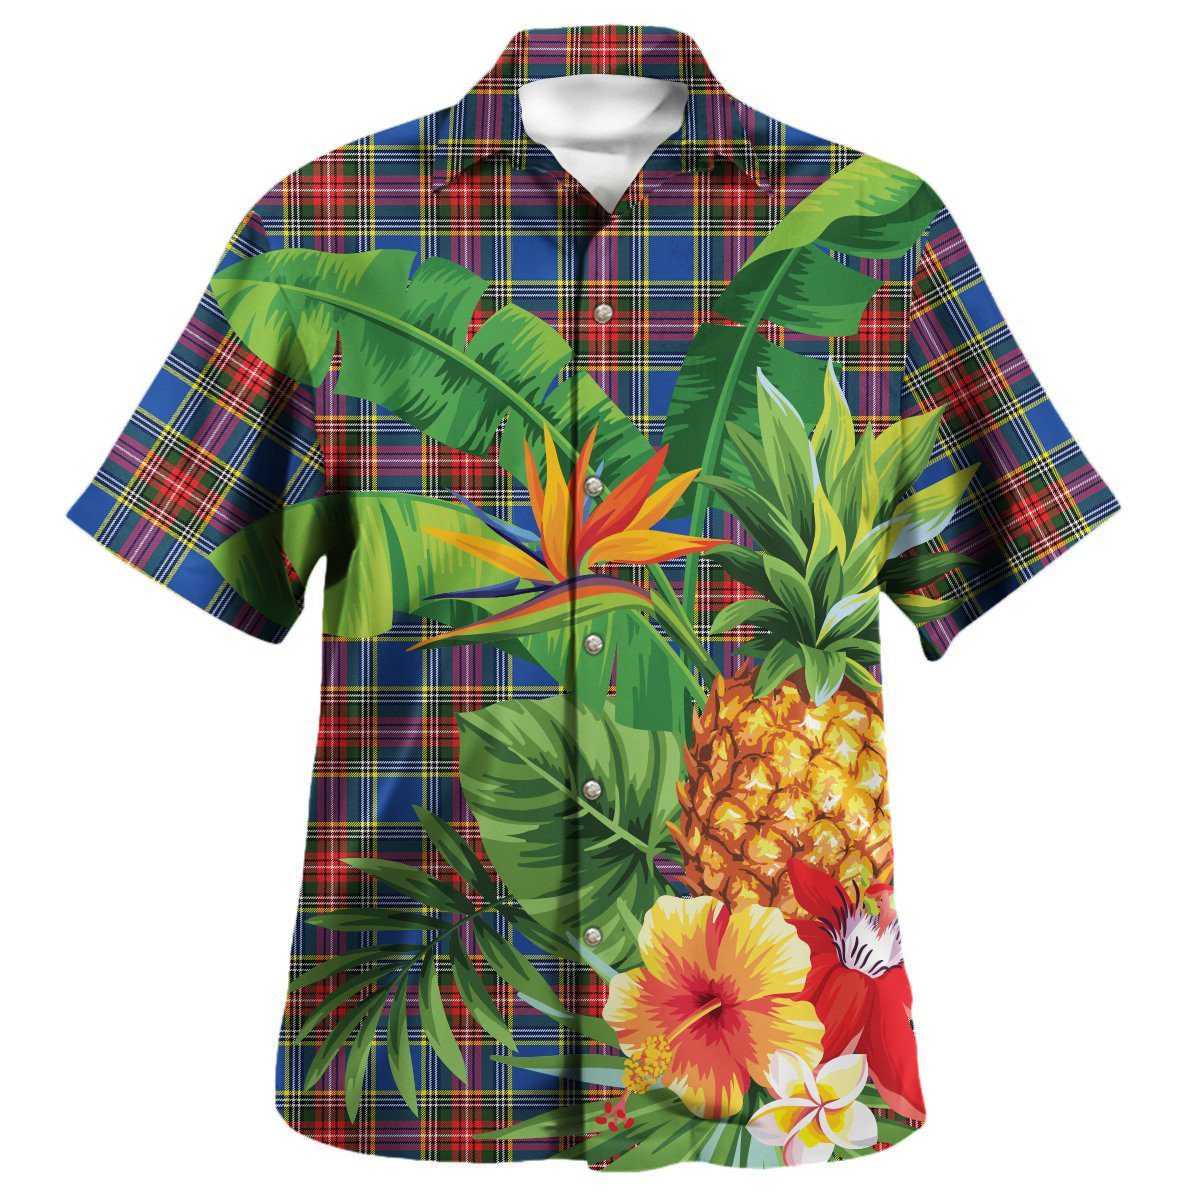 MacBeth Modern Tartan Aloha Shirt version 2